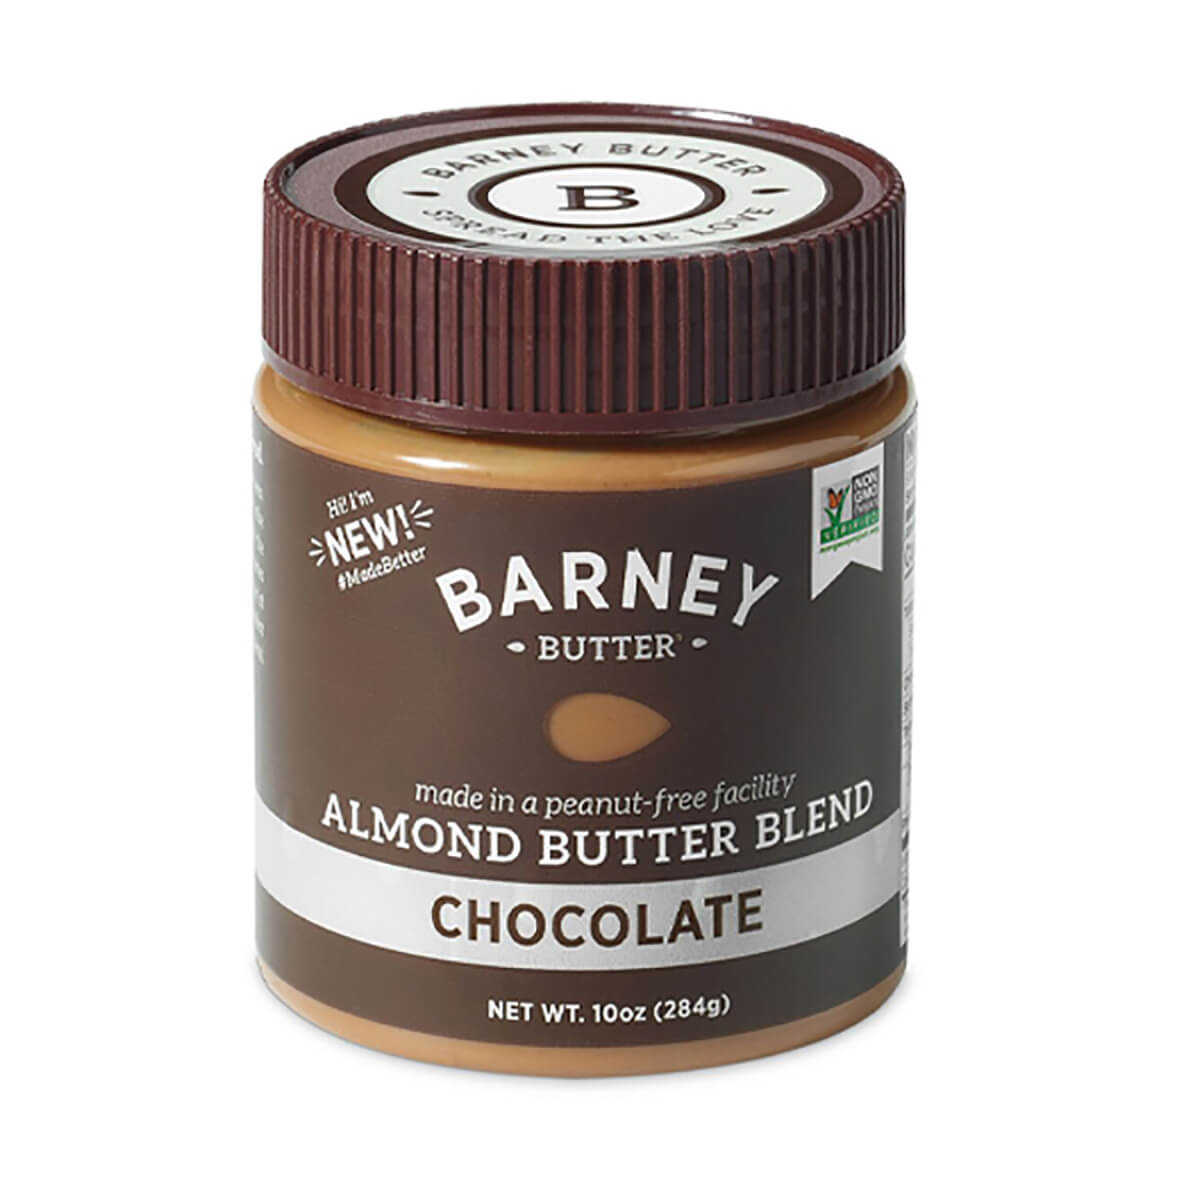 10oz Jars of Bare Smooth, Smooth, Chocolate